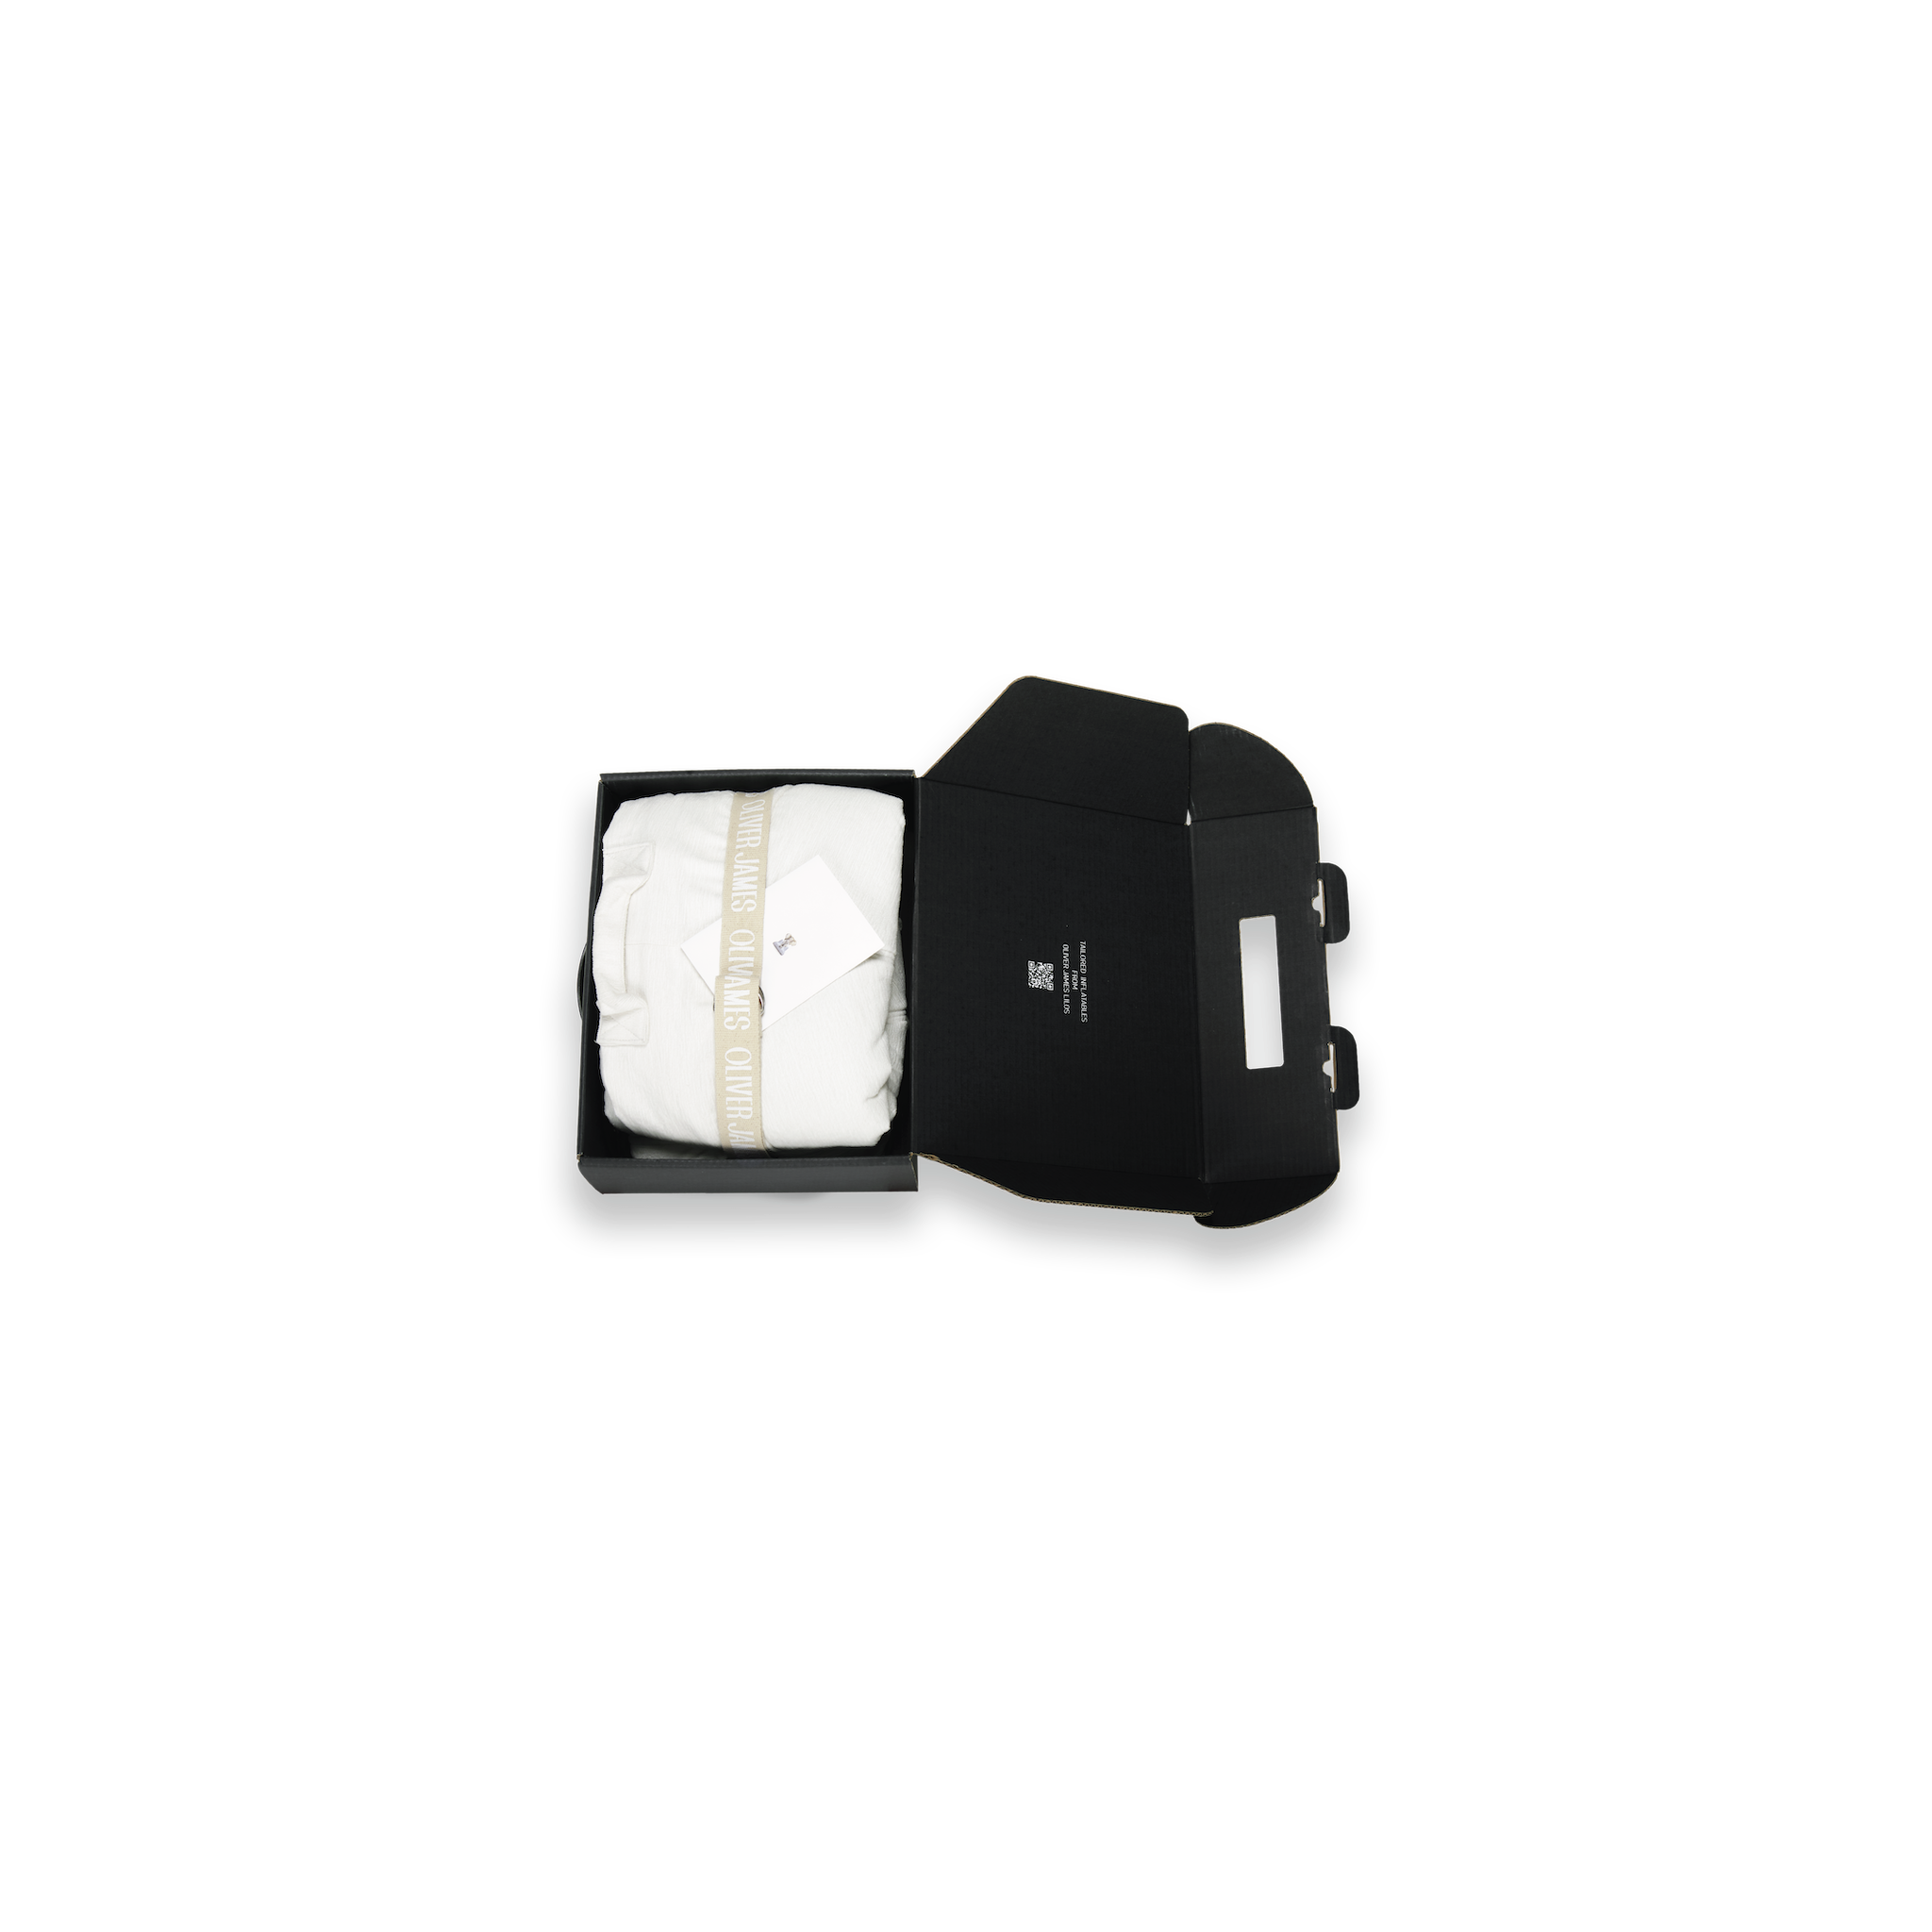 Bague housse de flotteur de piscine gonflable de luxe en éponge blanche pliée dans une boîte noire avec une ceinture, une carte et une pompe.